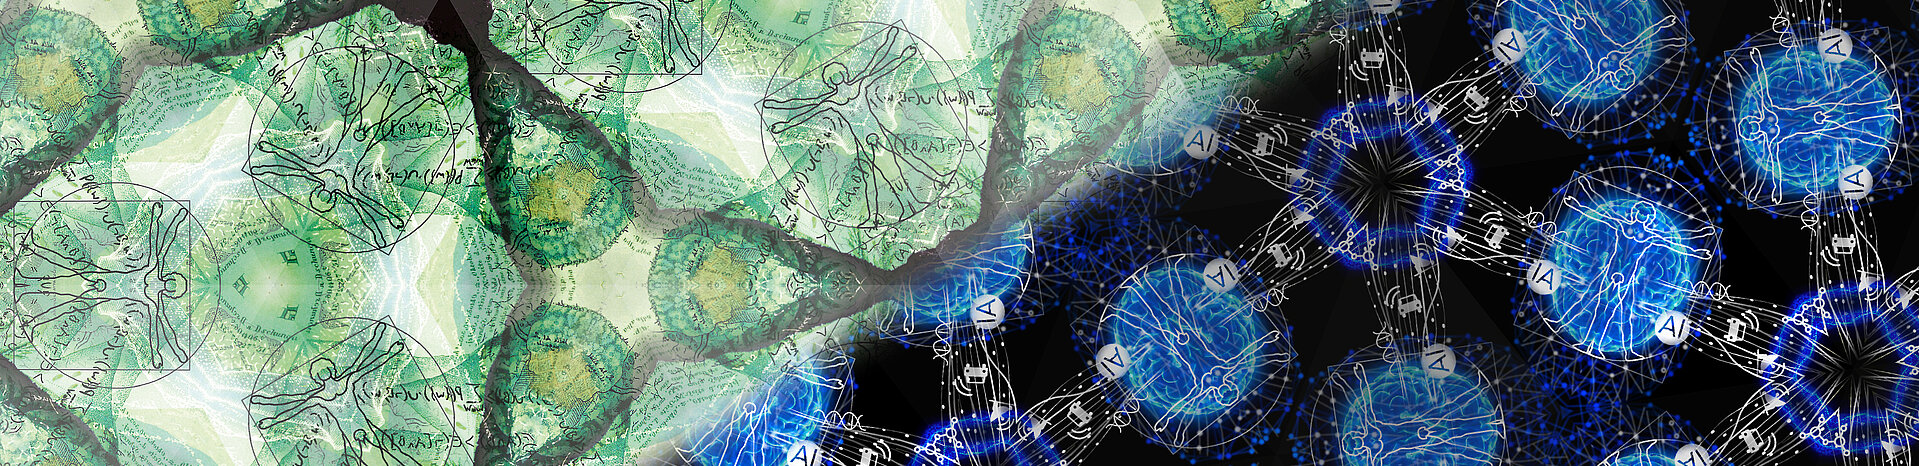 Grünes Muster mit Figuren, Symbolbild Humboldt-Professur und blau-schwarzes Muster mit Figuren, Symbolbild Humboldt-Professur für Künstliche Intelligenz